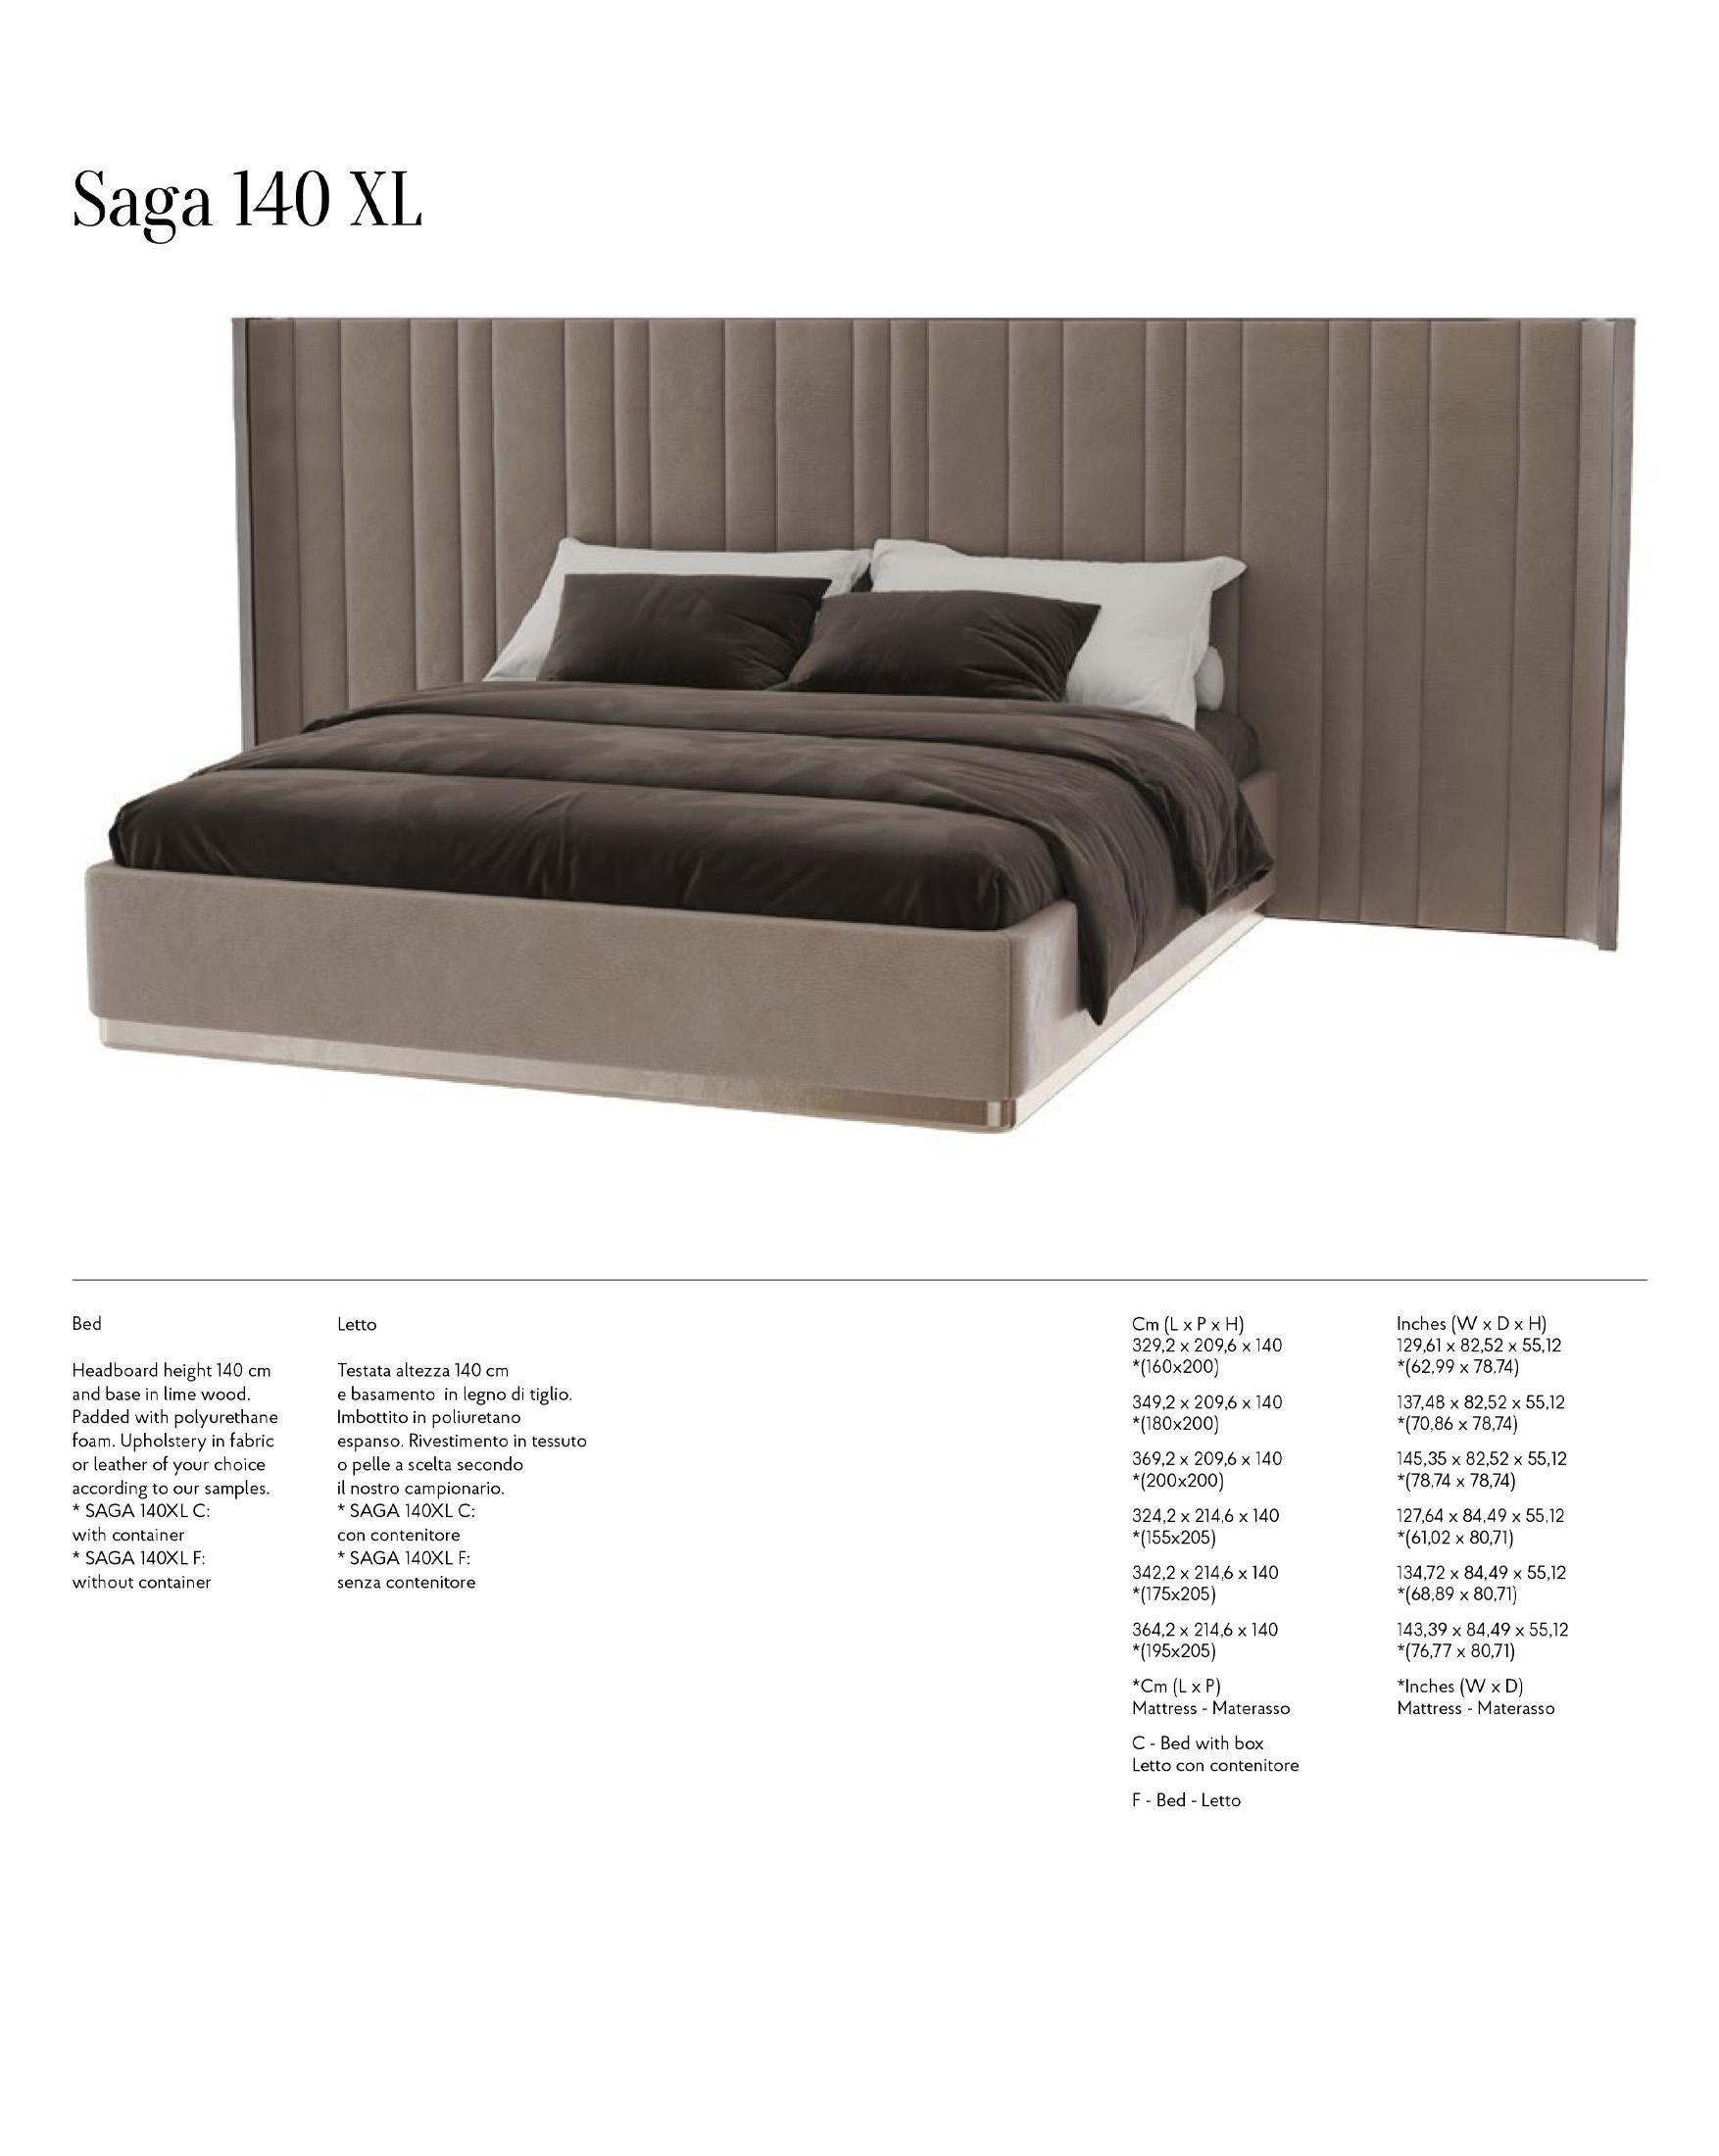 Saga 125 Italian Curved Bed Upholstered in Velvet Fabric For Sale 6